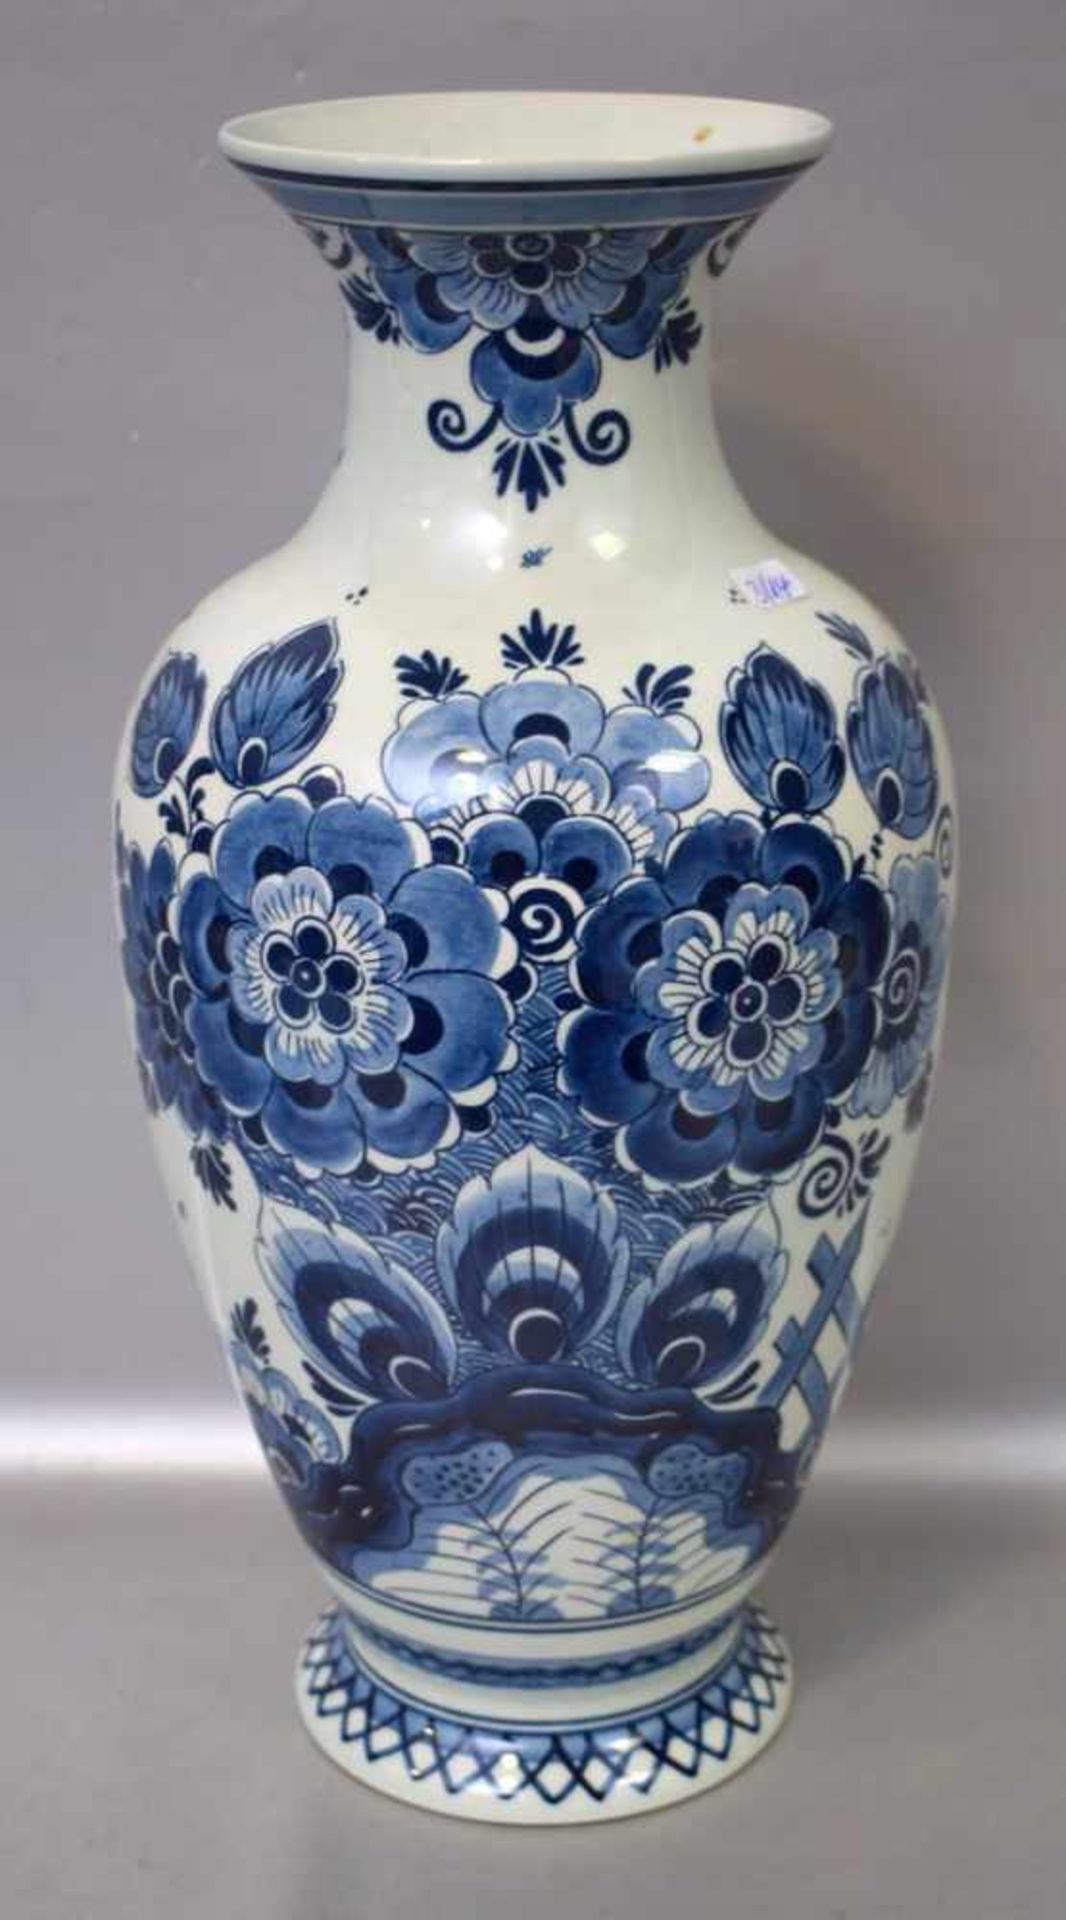 Vasebeigefarben, leicht gebaucht, Wandung mit blauer Blumenbemalung, H 35 cm, FM Delft